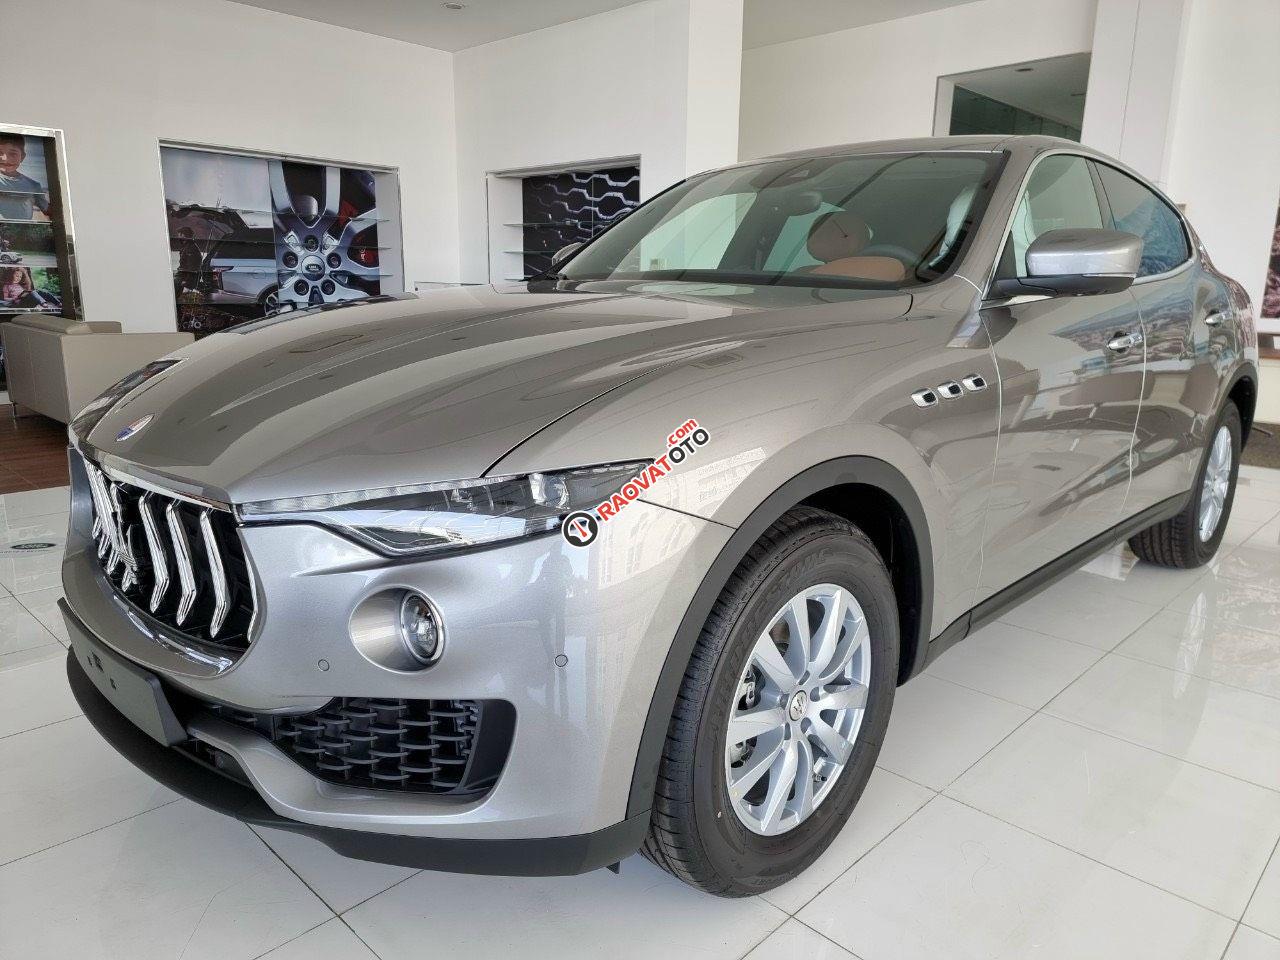 Gía xe maserati levante 2019 xe mới 100 màu xám bạc, màu bạc nội thất đen hổ trợ vay 65%-16